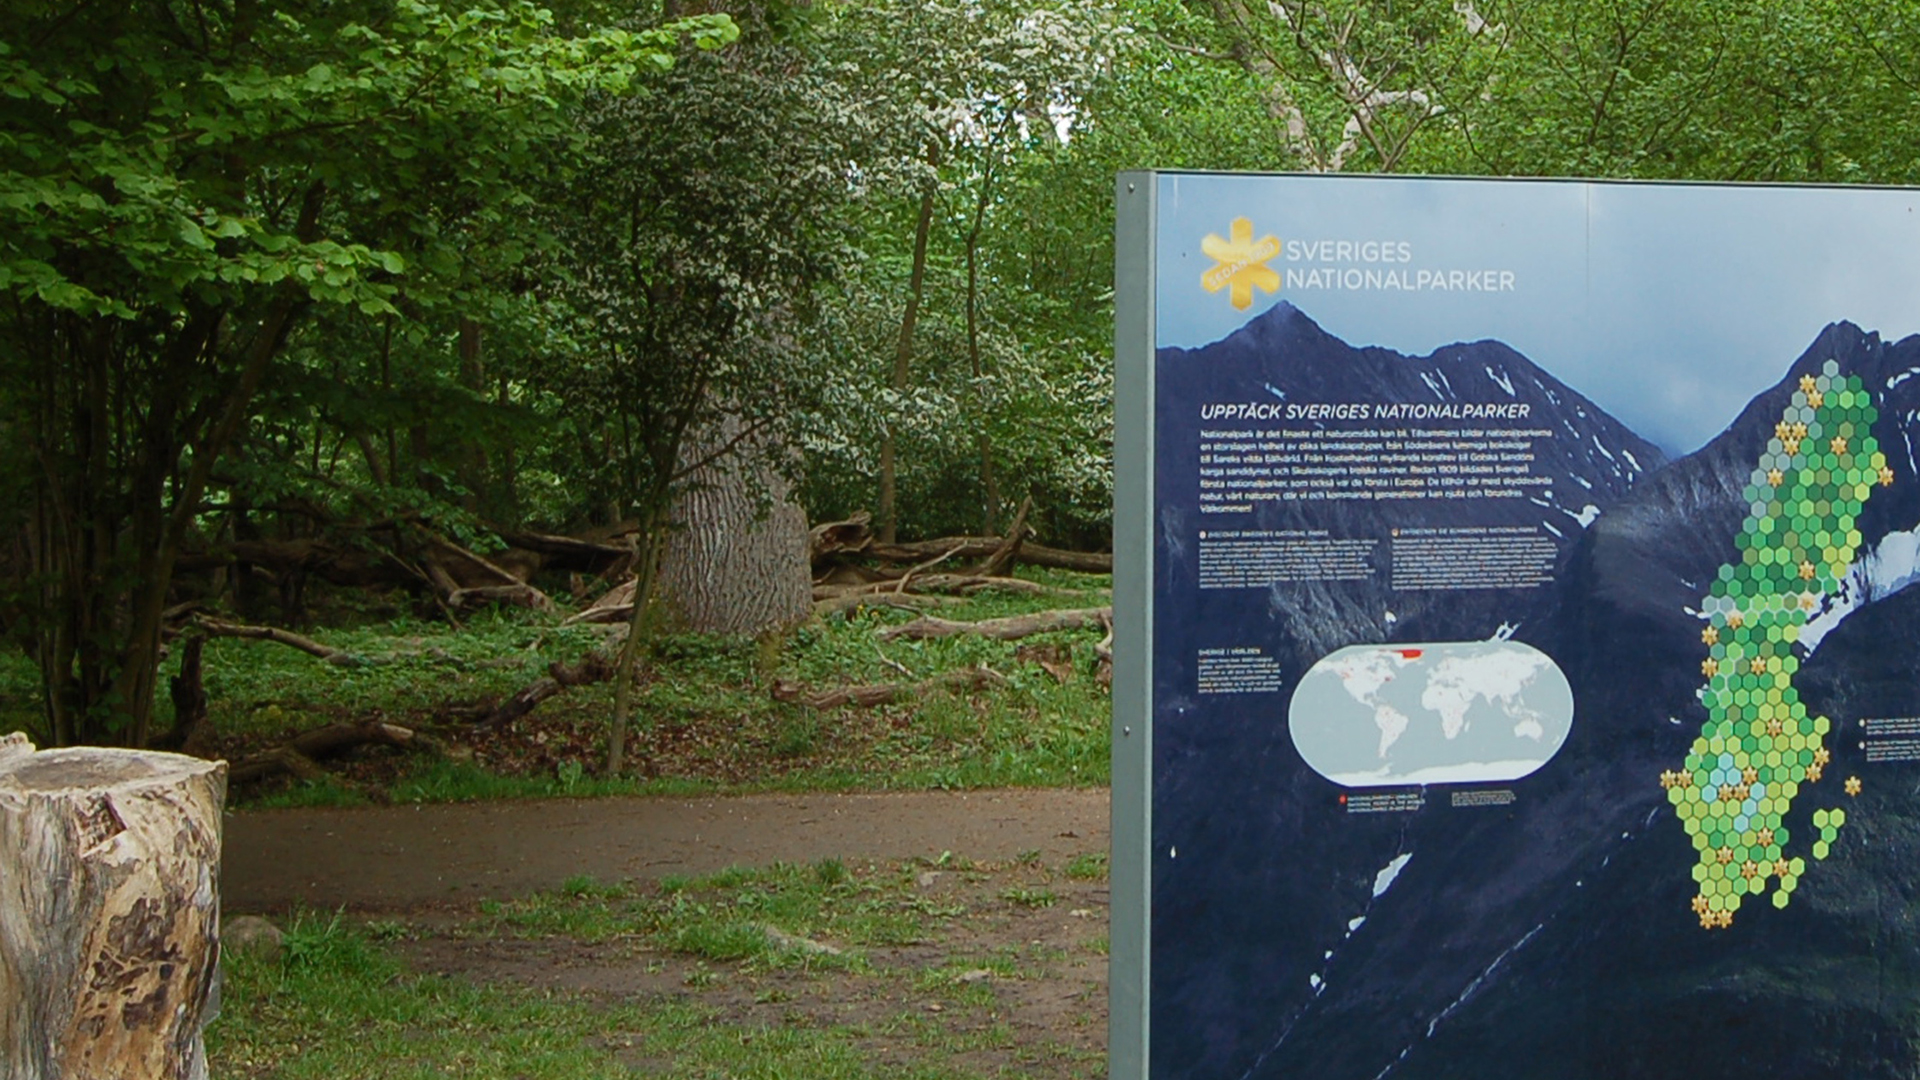 Skylt med sverigekarta som markerar nationalparkerna och en stubbe framför en grusväg och träd.